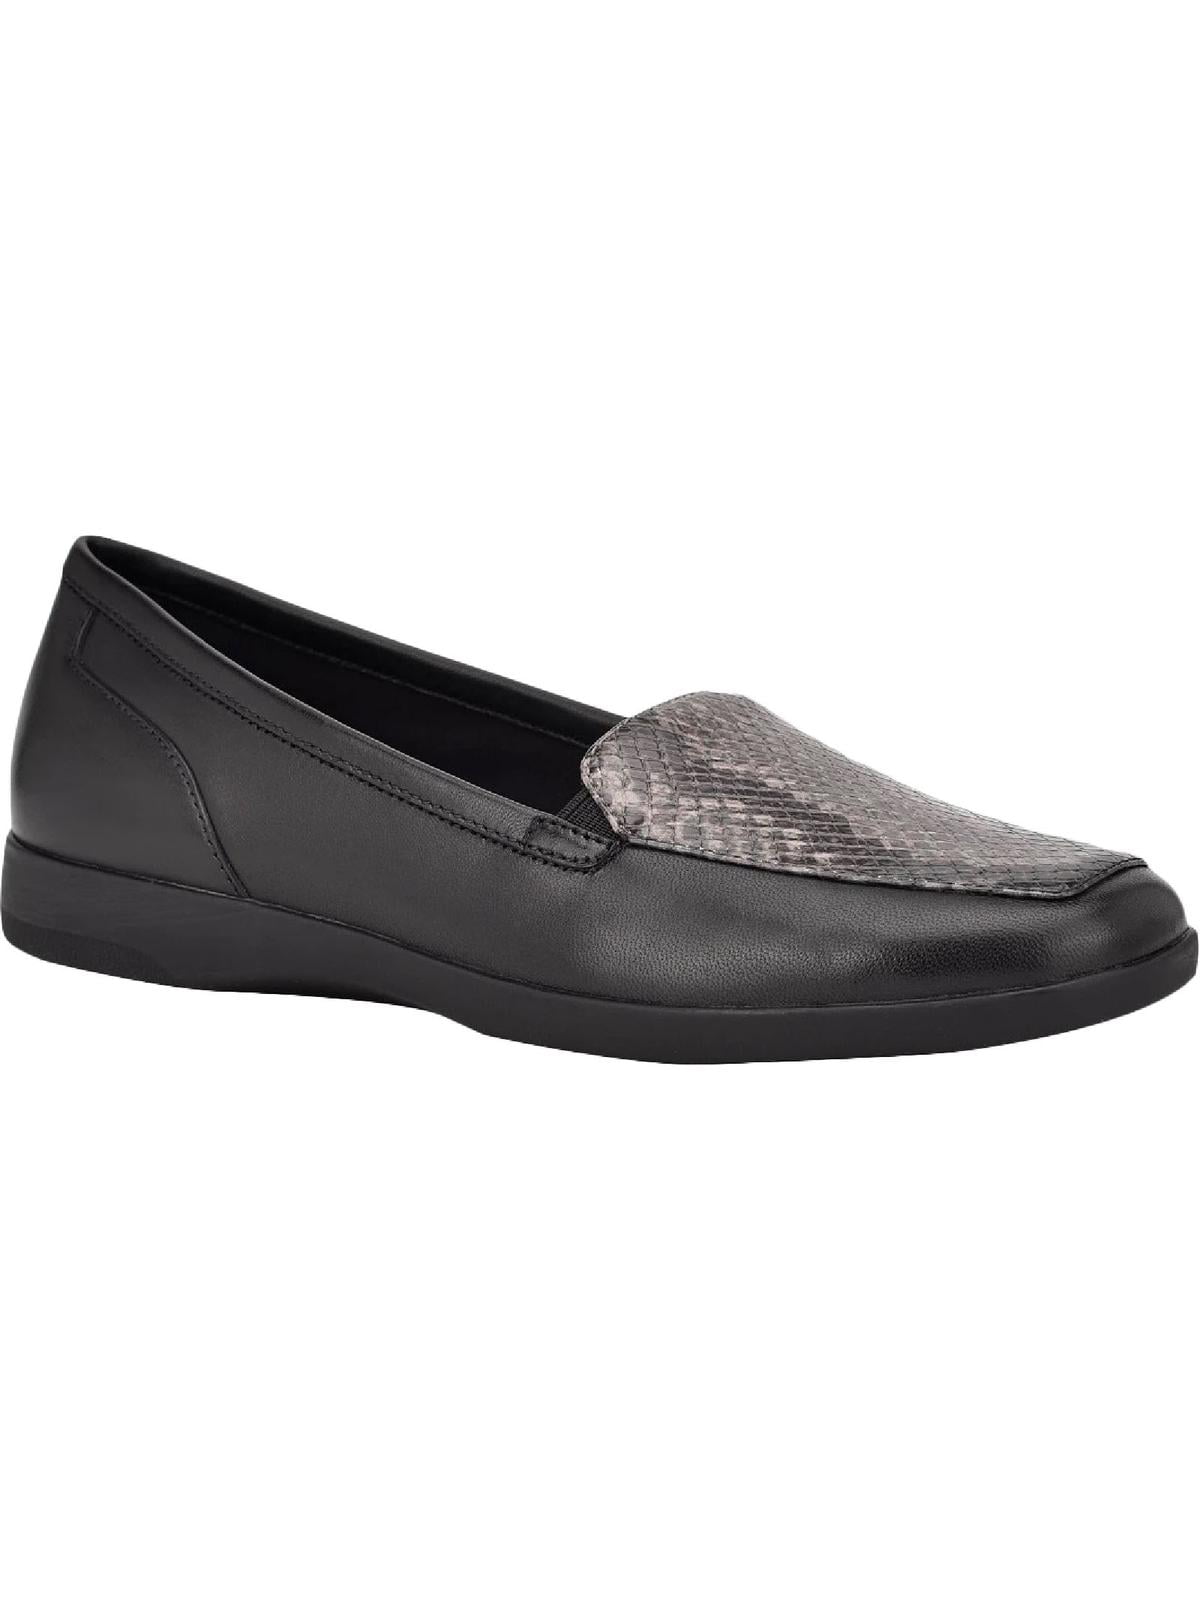 Easy Spirit Devitt 10 Women's Leather Slip On Loafers Black 7 - Walmart.com